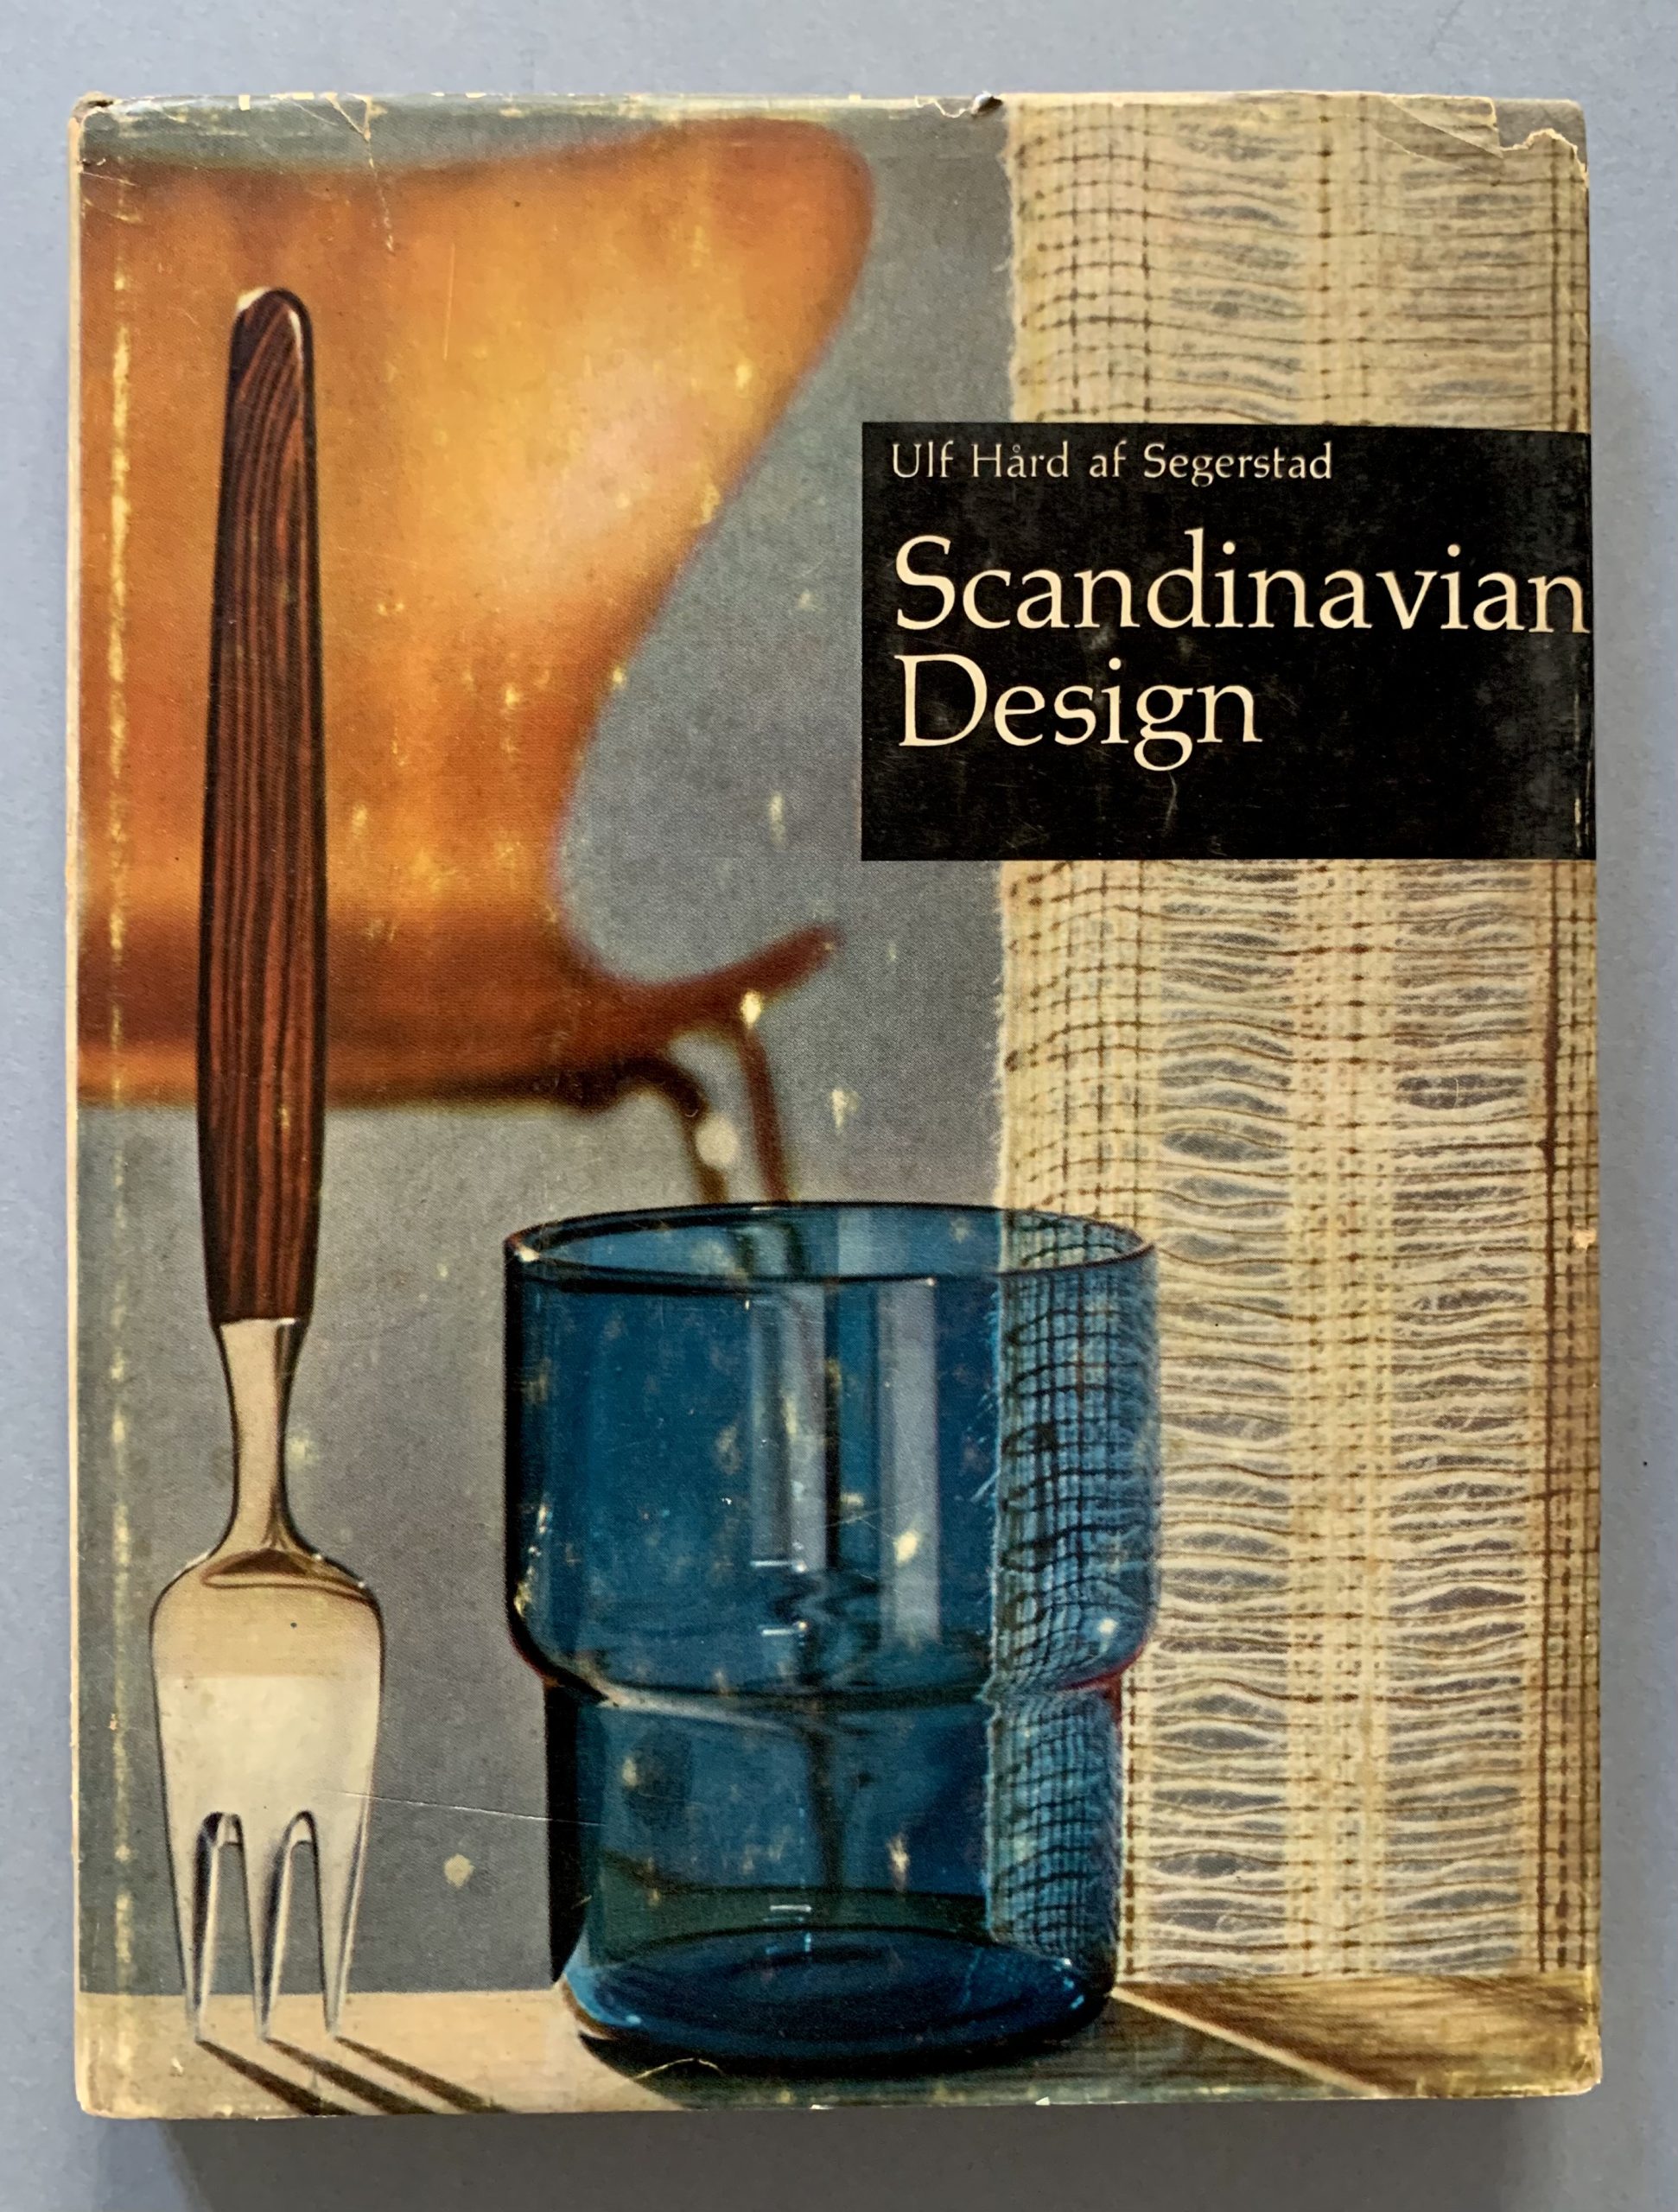 Scandinavian Design - Laminarium